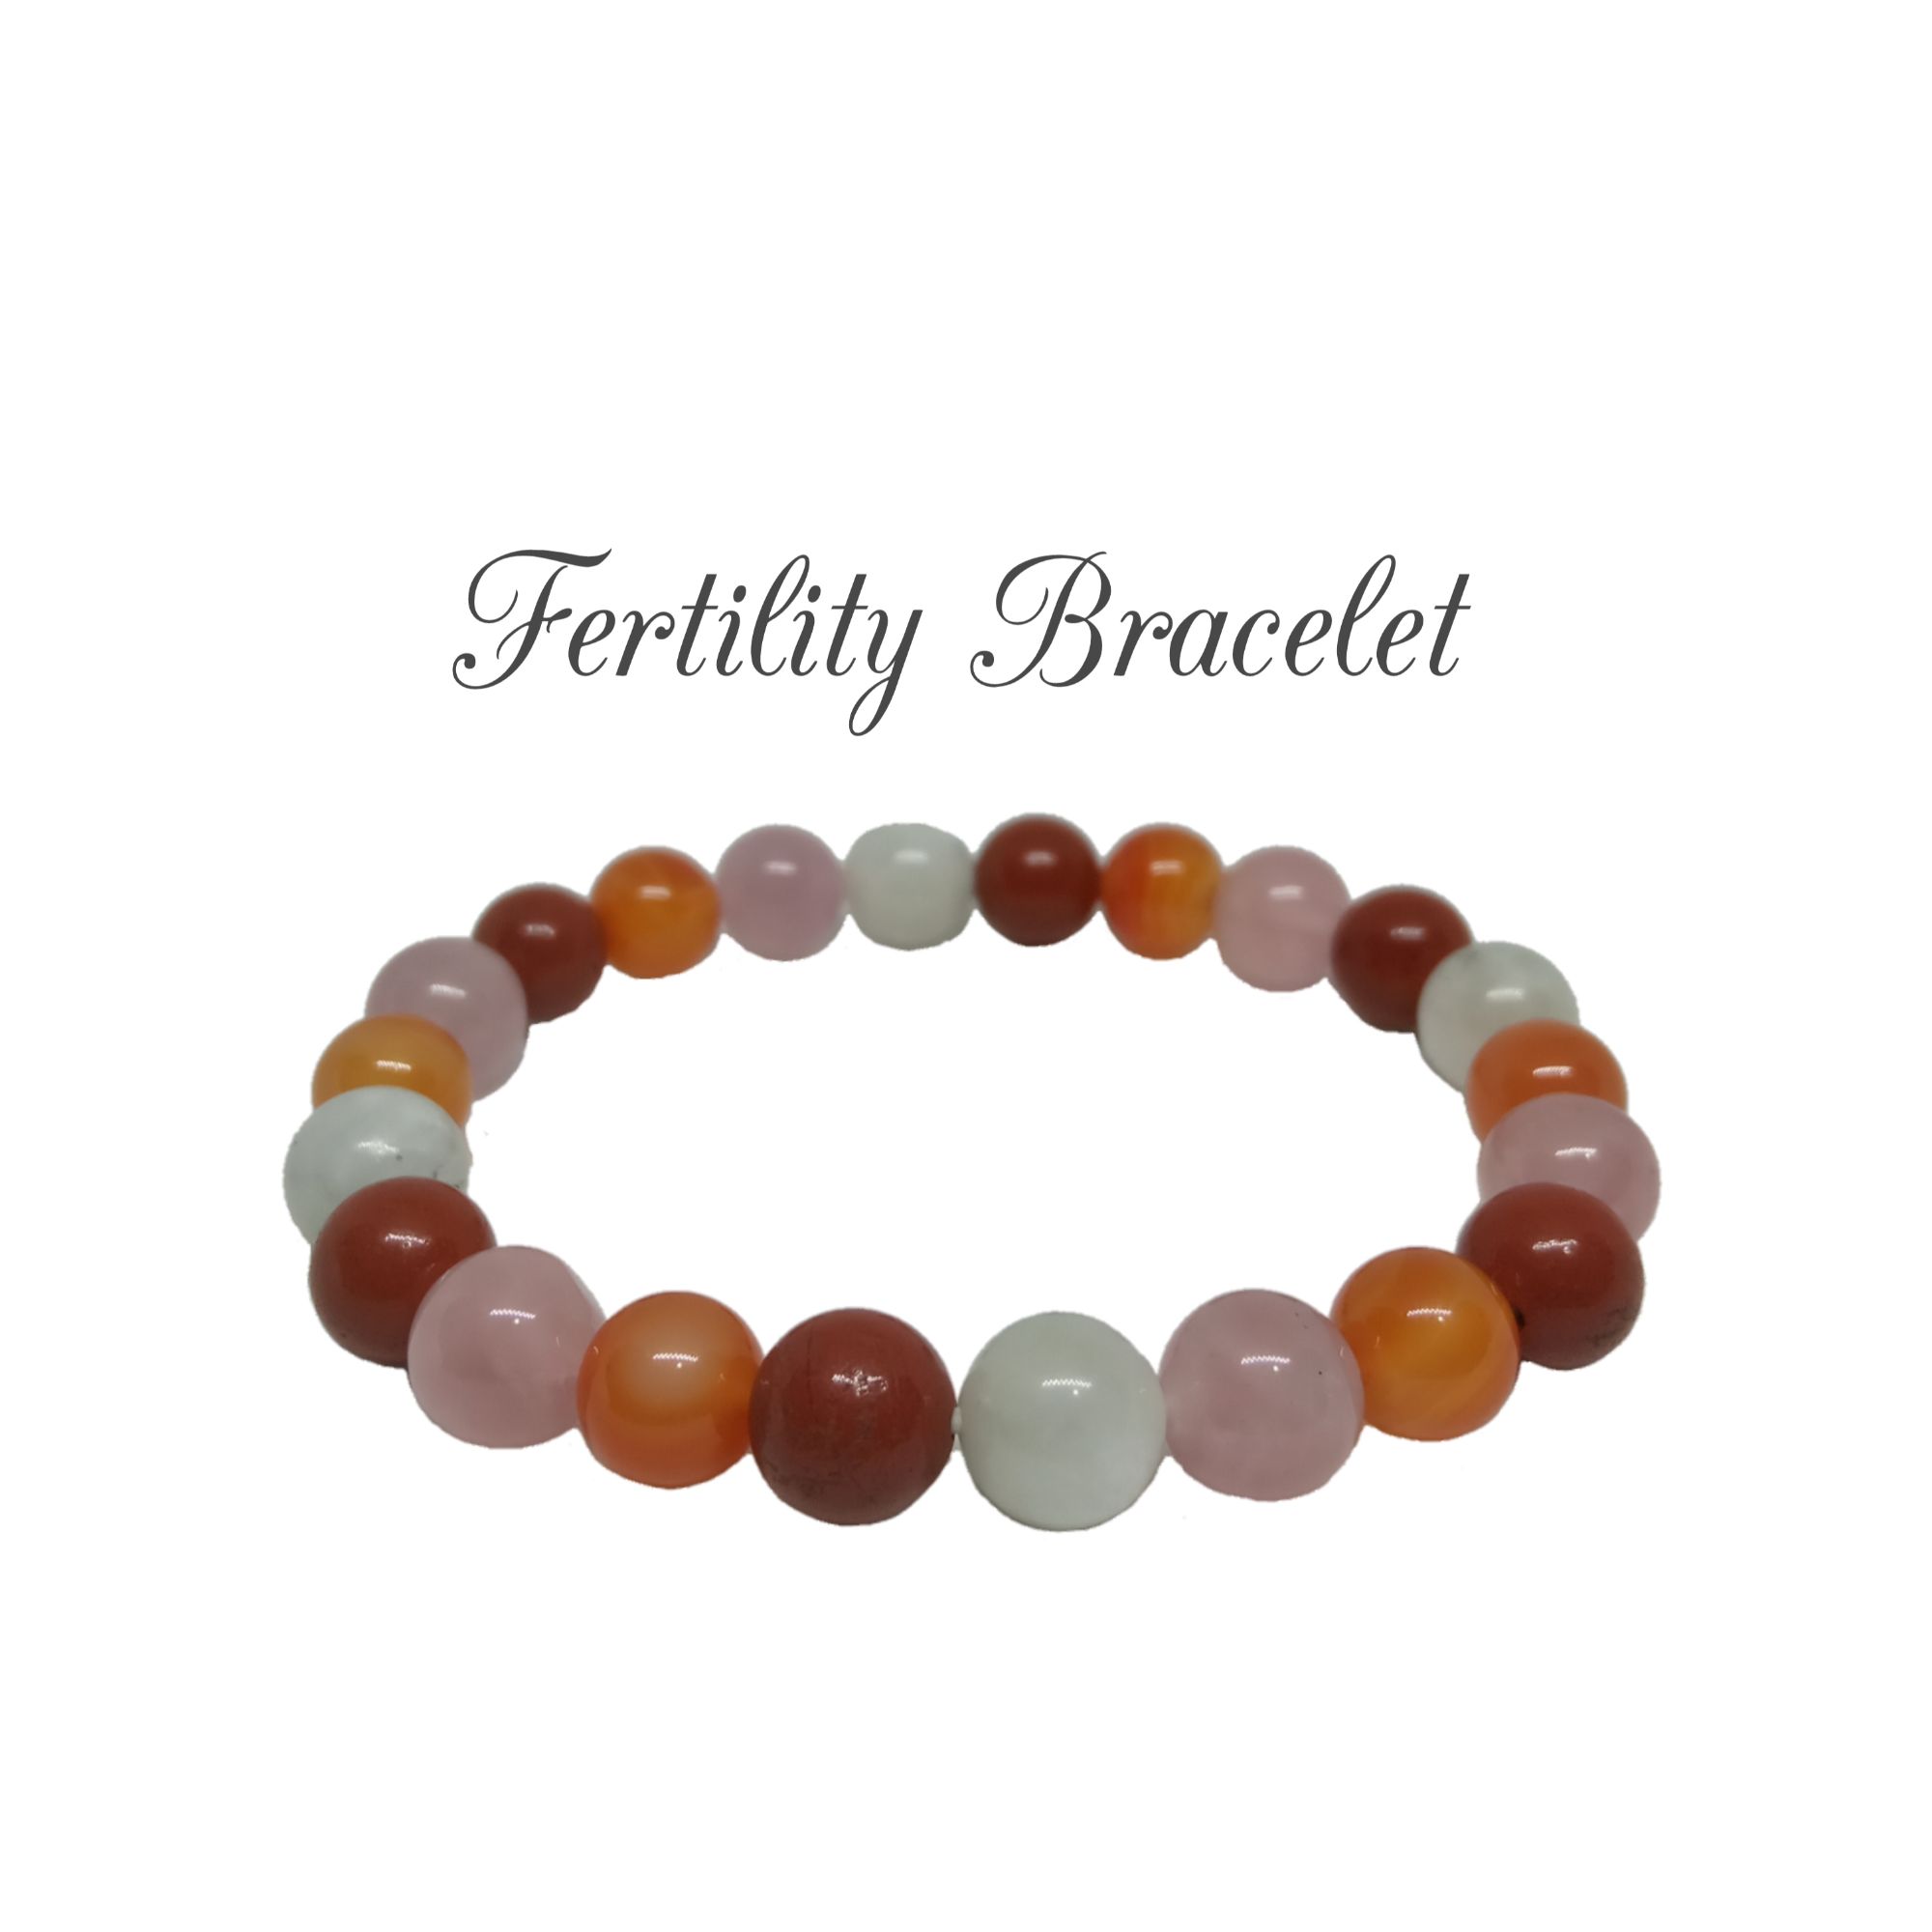 Discover 150+ fertility bracelet success stories